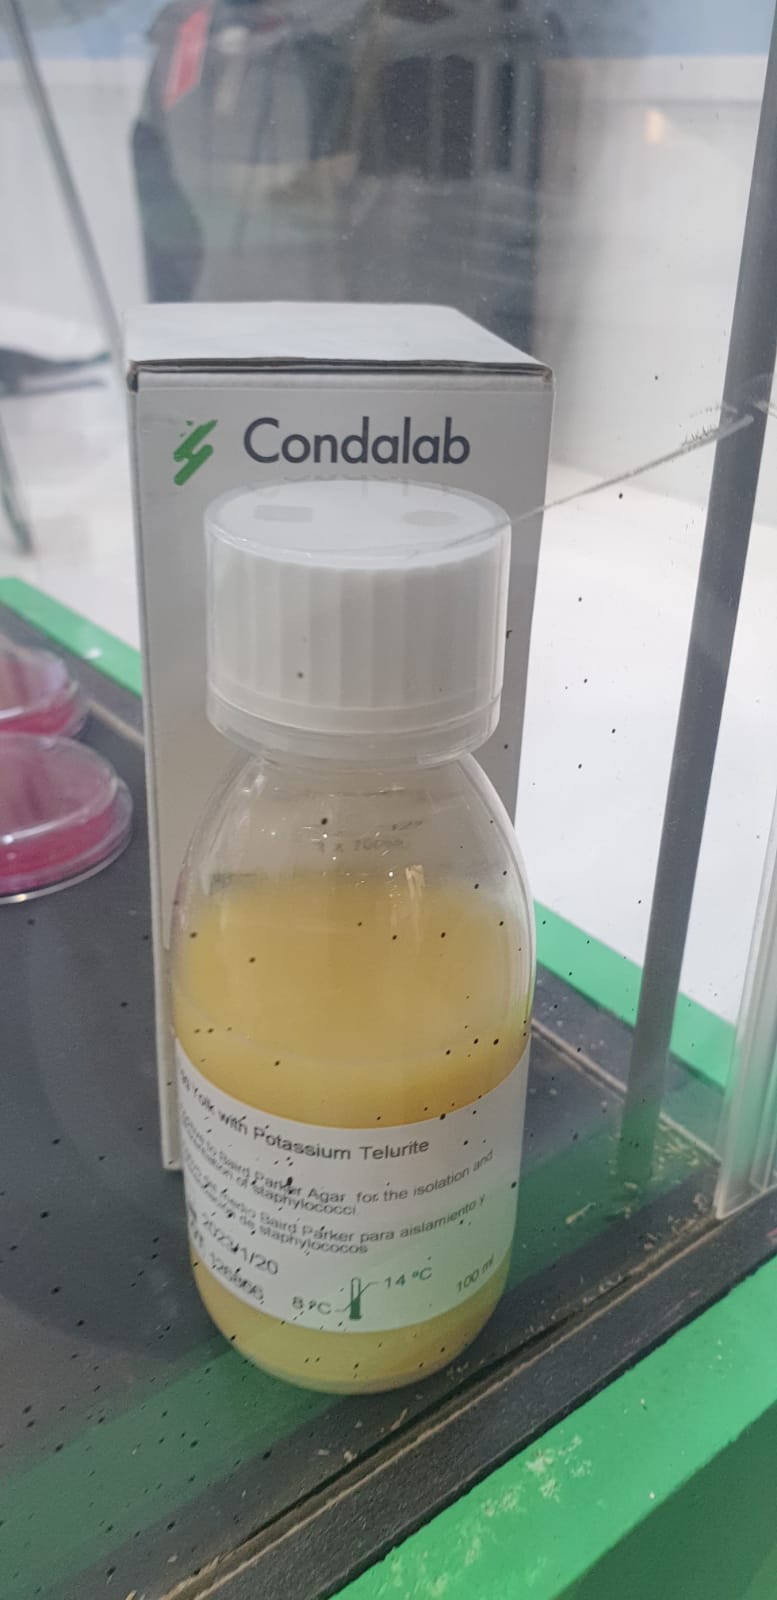 Condalab Potassium Telurite